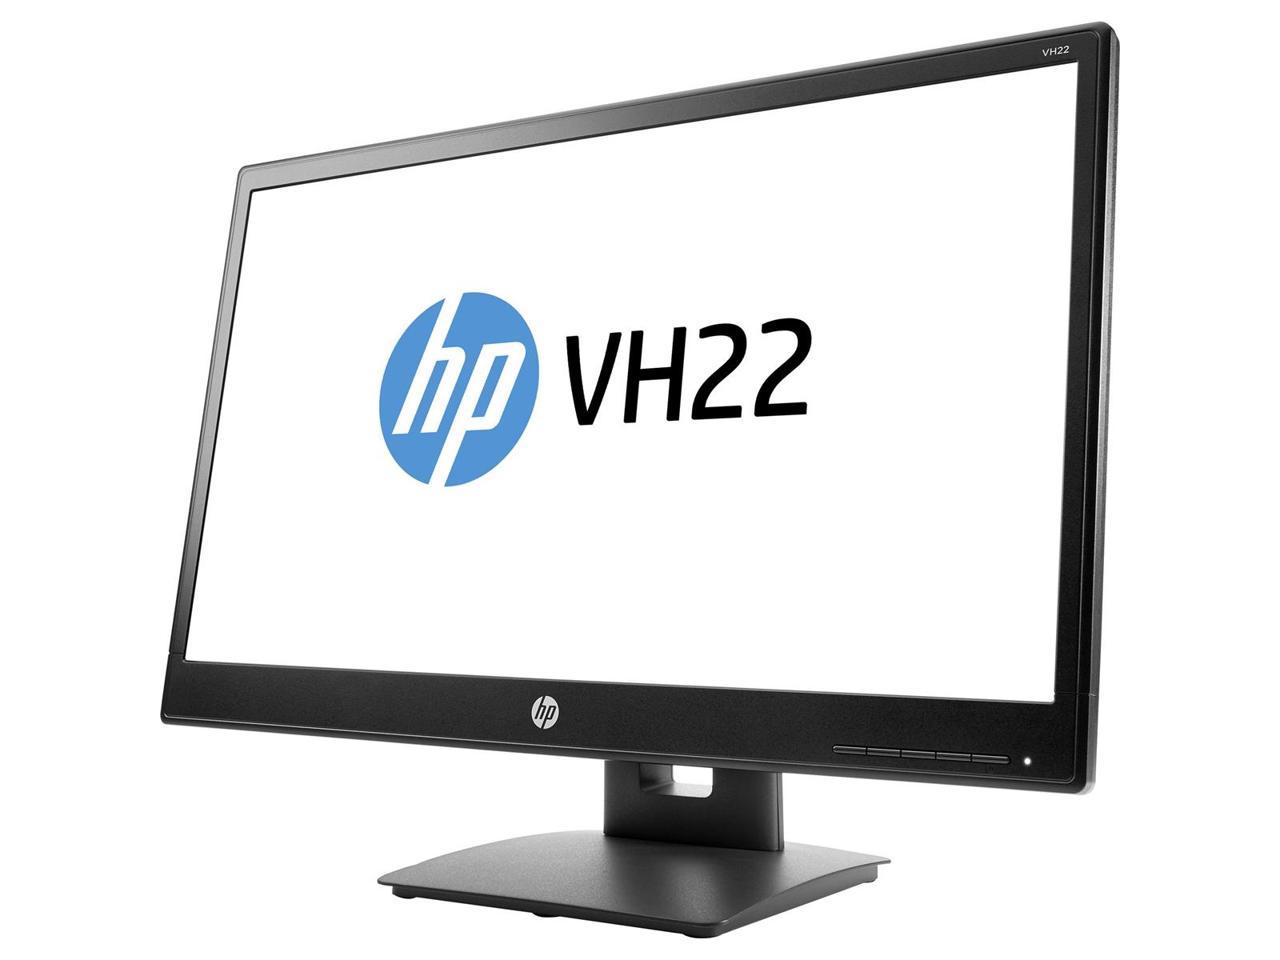 HP VH22 LED Monitor